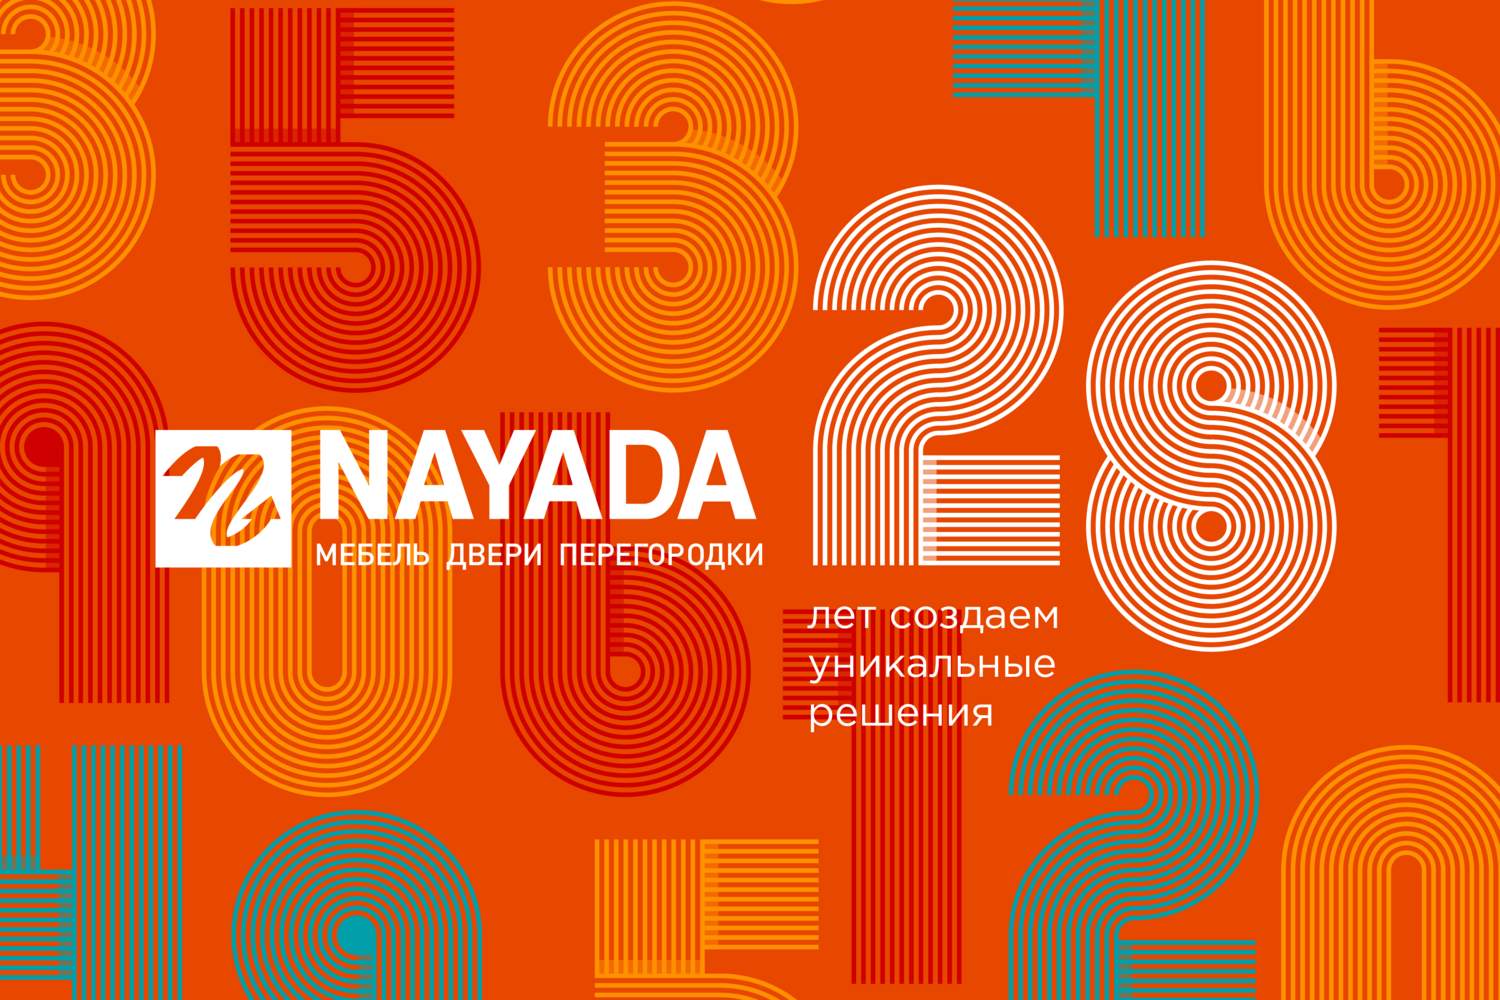 Фото Сегодня нашей компании NAYADA исполняется 28 лет!